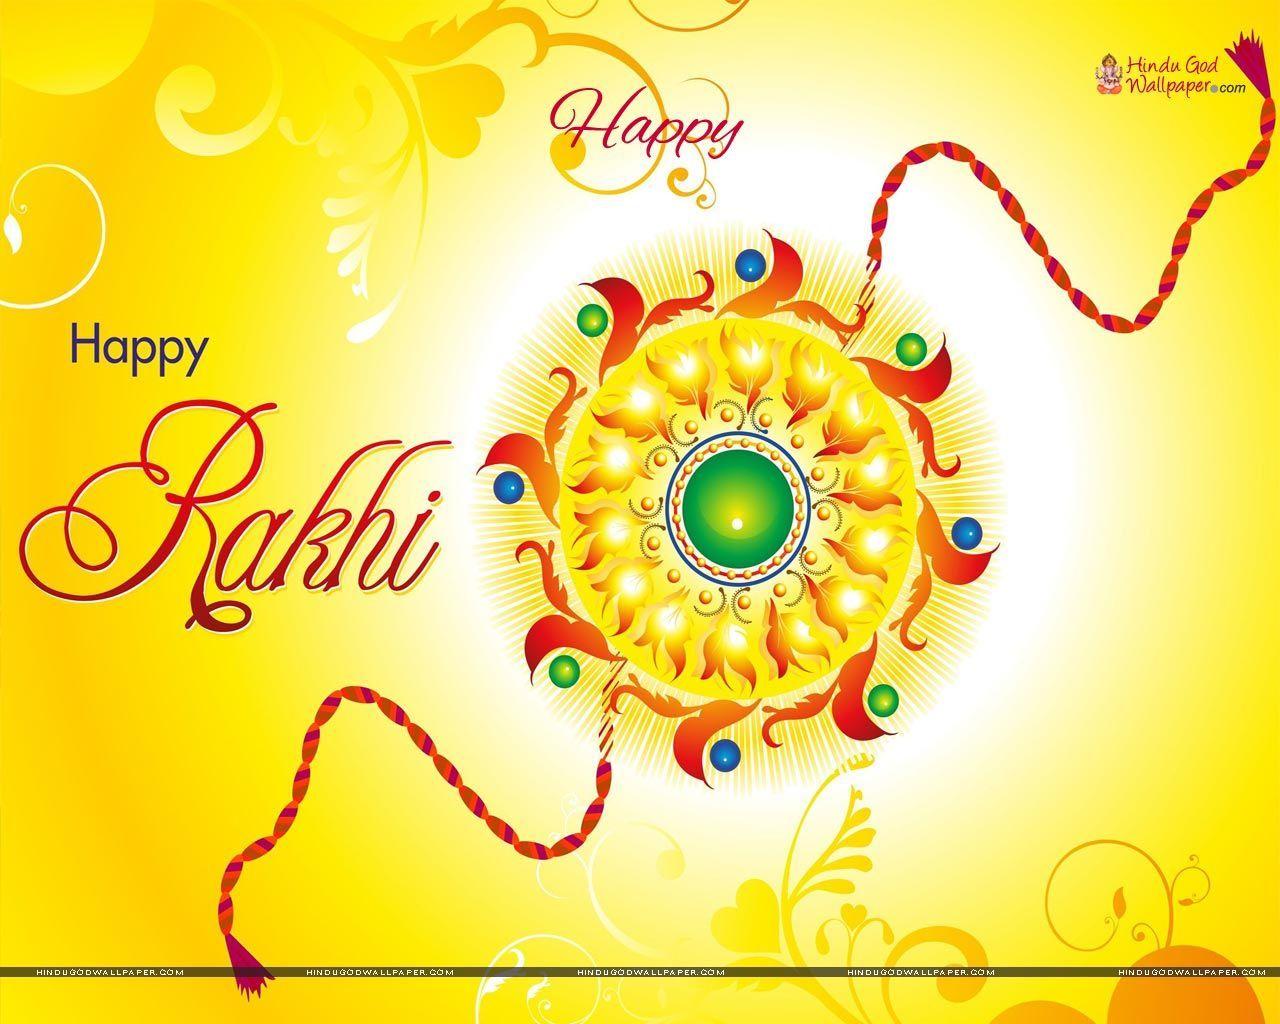 Happy Raksha Bandhan Wallpapers - Top Free Happy Raksha Bandhan ...